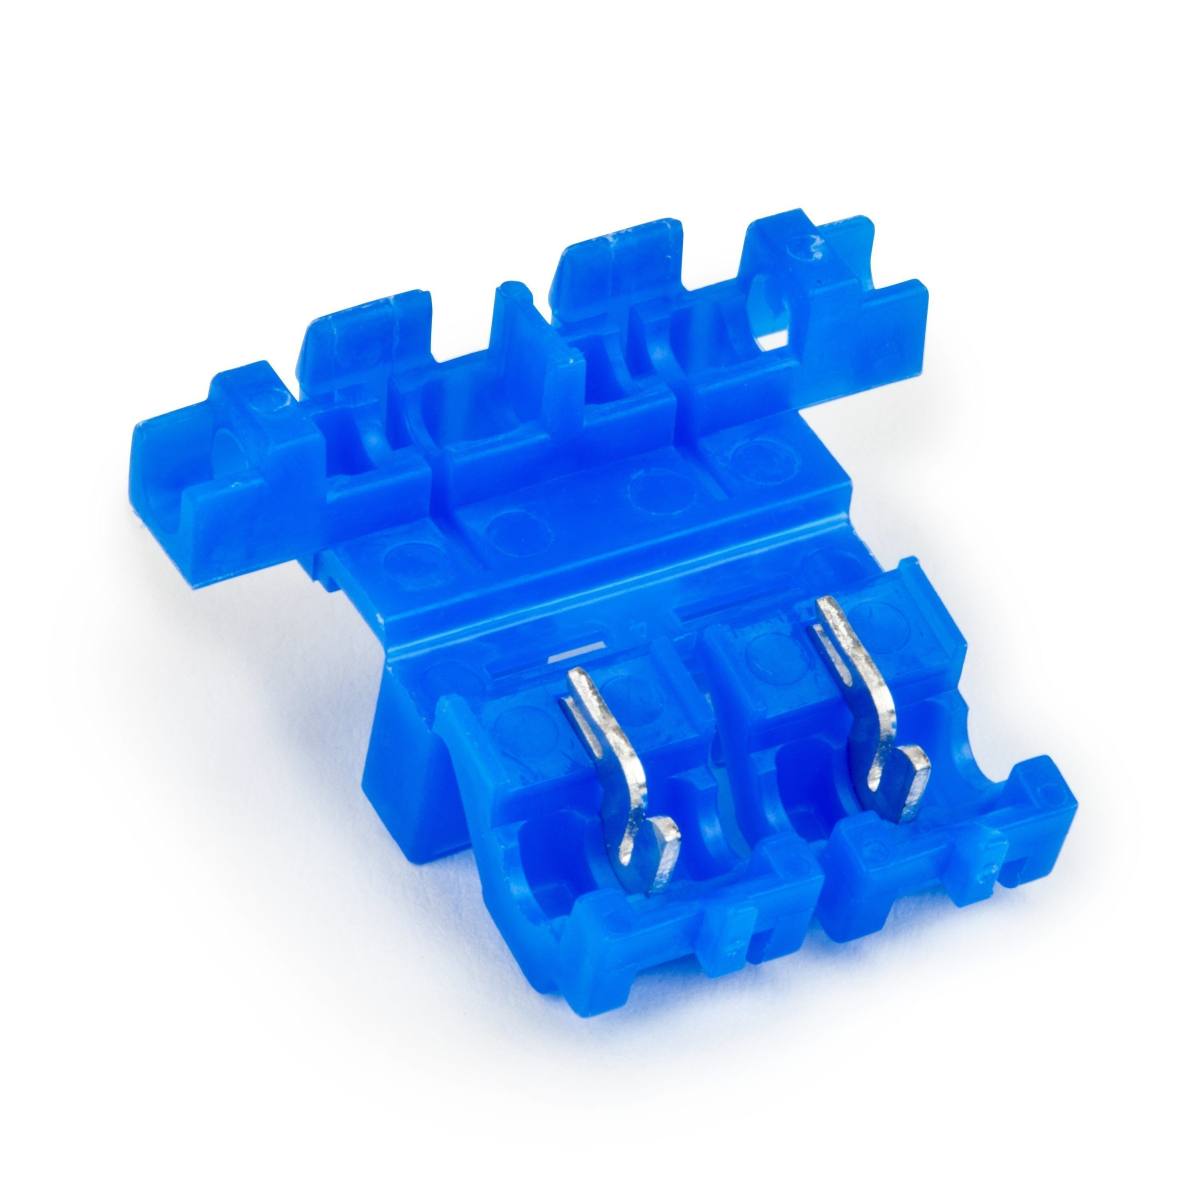 3M Scotchlok 972 Flachsicherungshalter, Blau, 32 V, max. 0,75 - 1,5 mm², 1000 Stück / Karton